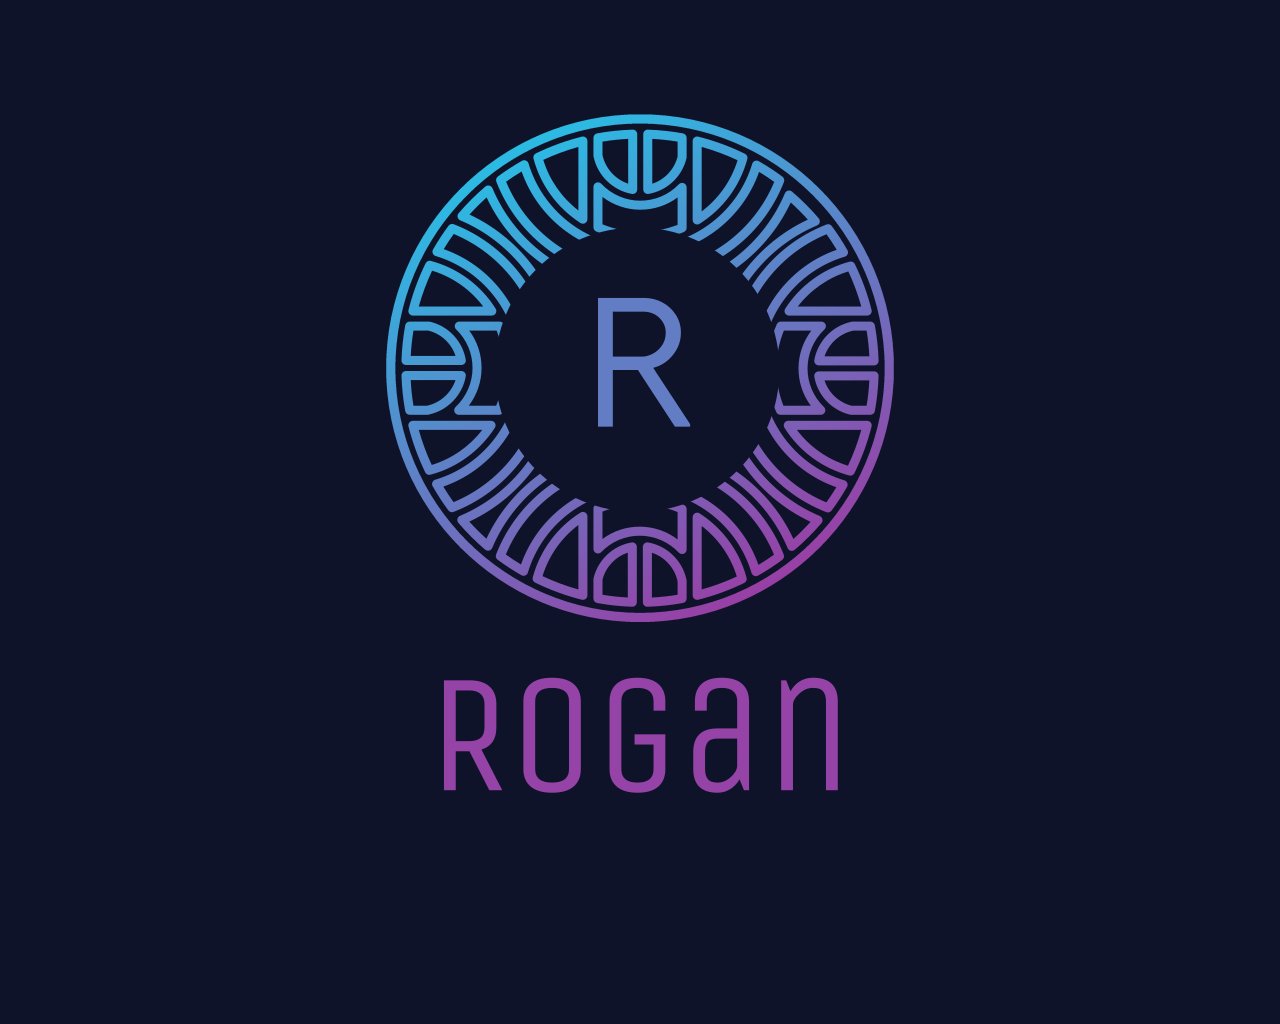 Rogan Coin